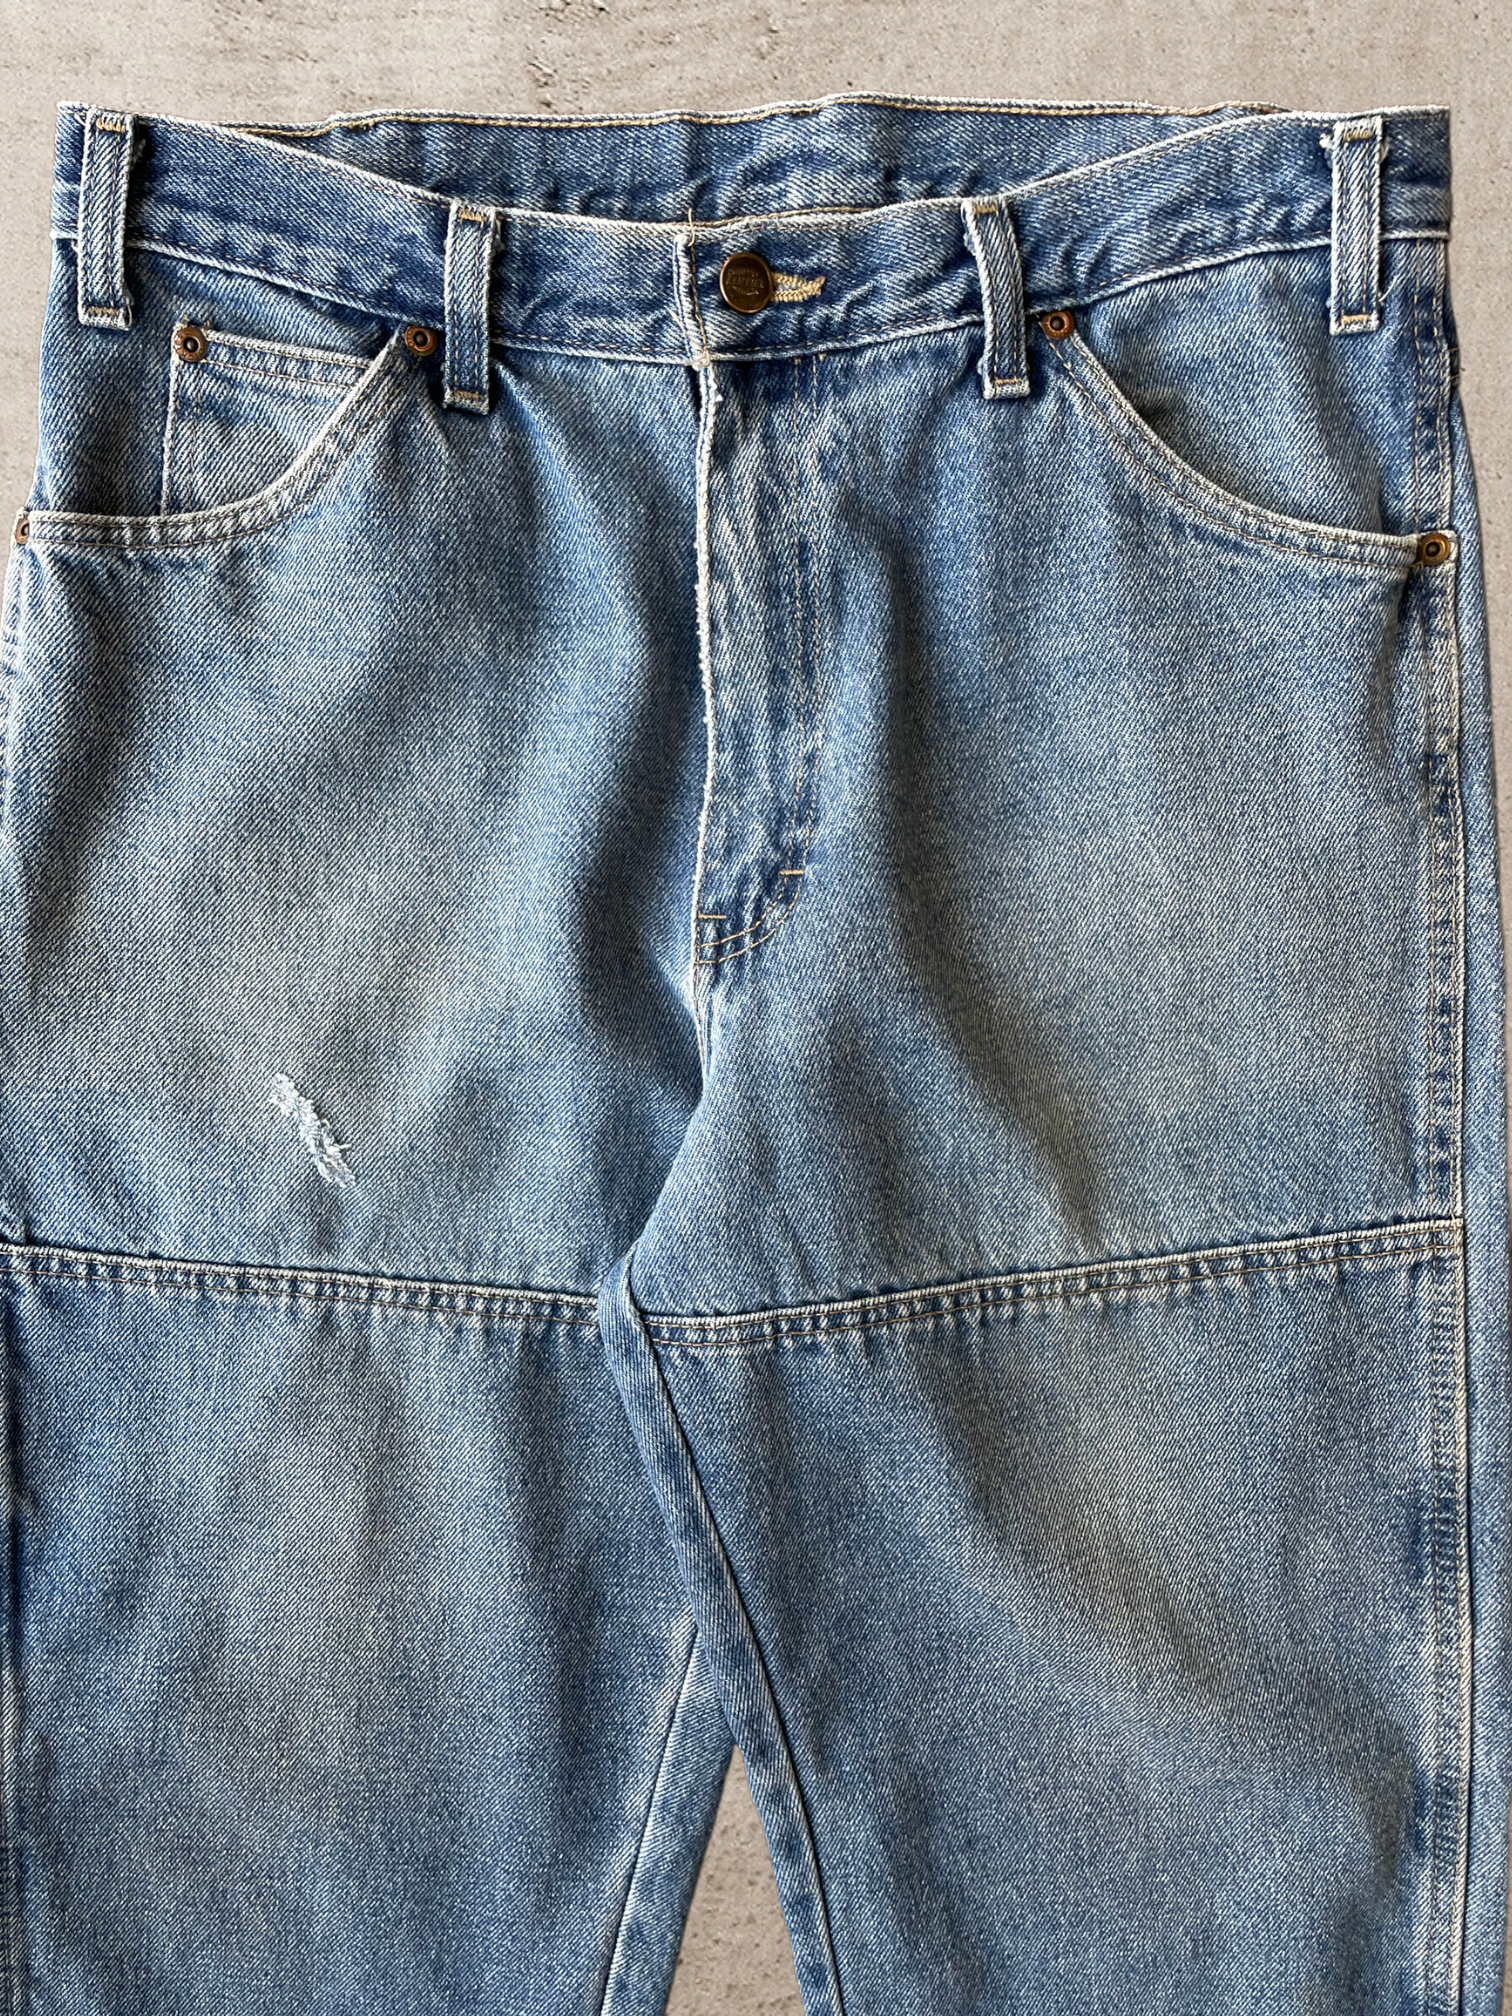 Vintage Dickies Double Knee Carpenter Pants - 34x30